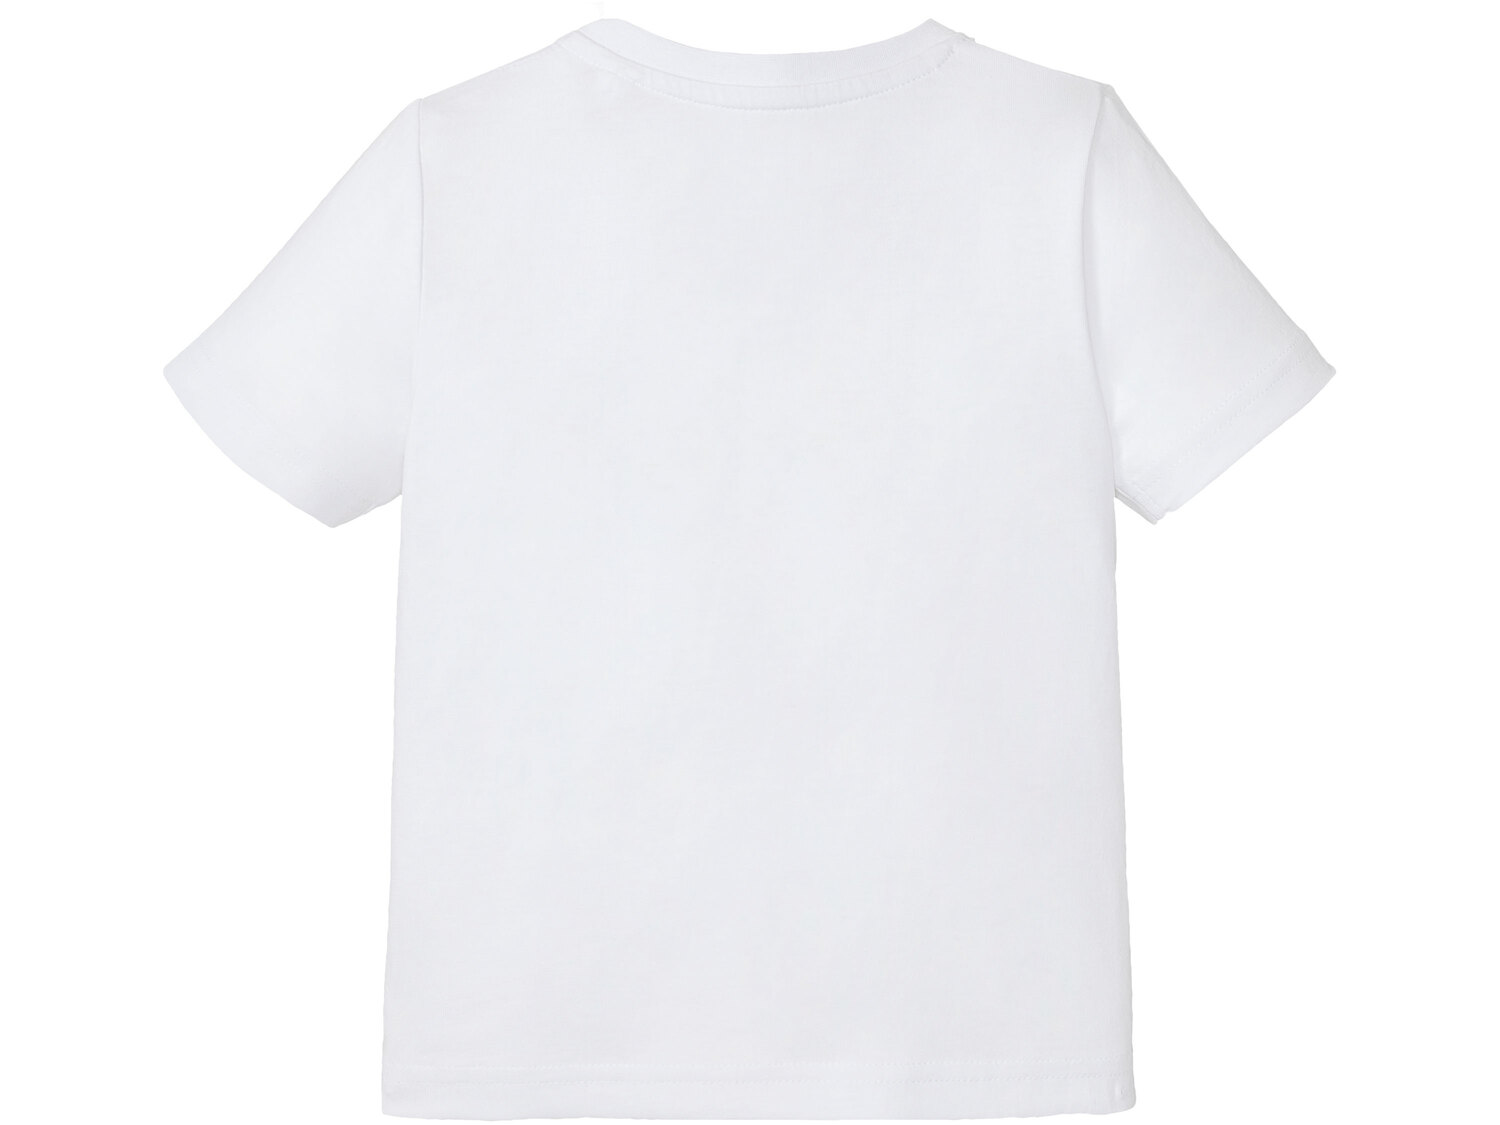 T-shirt chłopięcy z licencją , cena 9,99 PLN 
- rozmiary: 86-116
- 100% bawełny
Dostępne ...